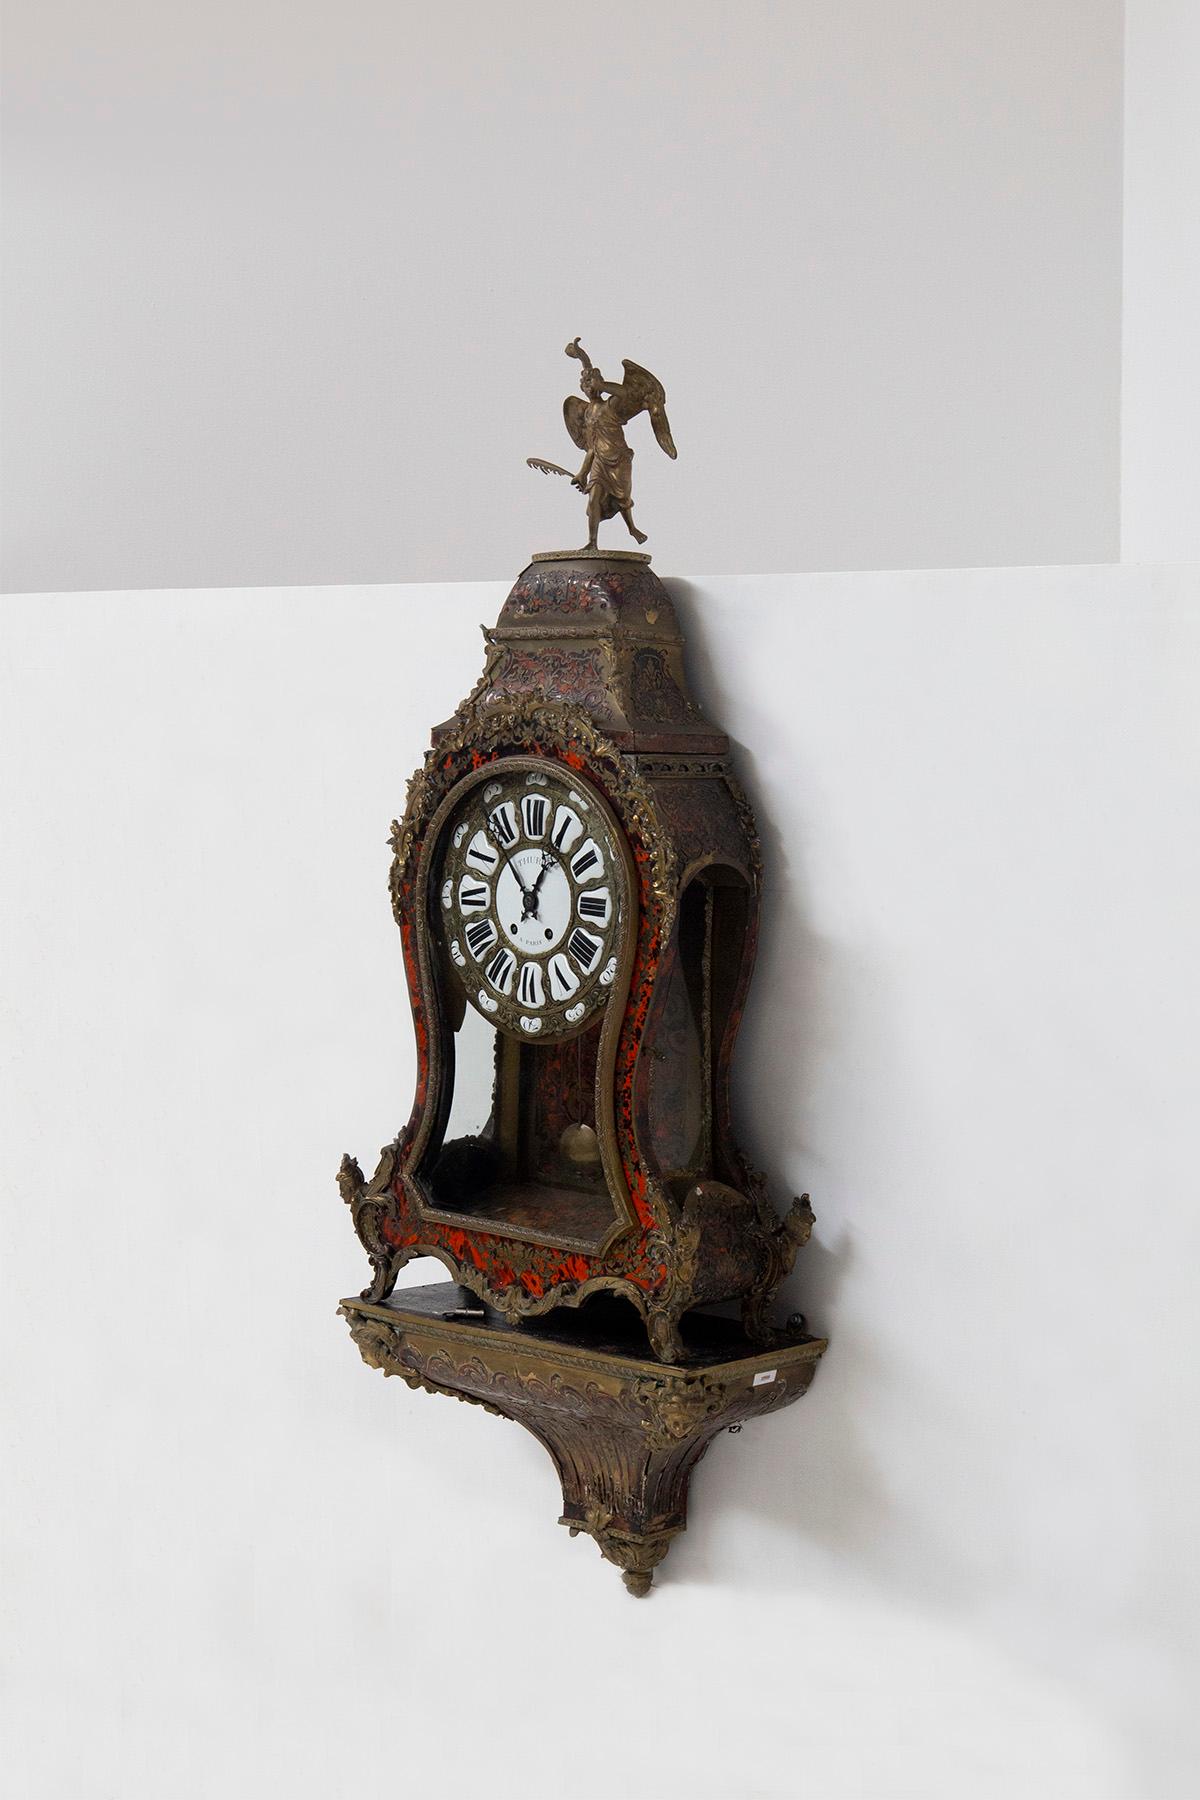 Frühe 1900's Französisch Boulle Uhr. Dieser exquisite Zeitmesser, ein wahres Meisterwerk der Handwerkskunst, ist eine Symphonie aus gemeißelter und vergoldeter Bronze, verziert mit dem Reichtum einer Schildpatt-Imitation und verziert mit